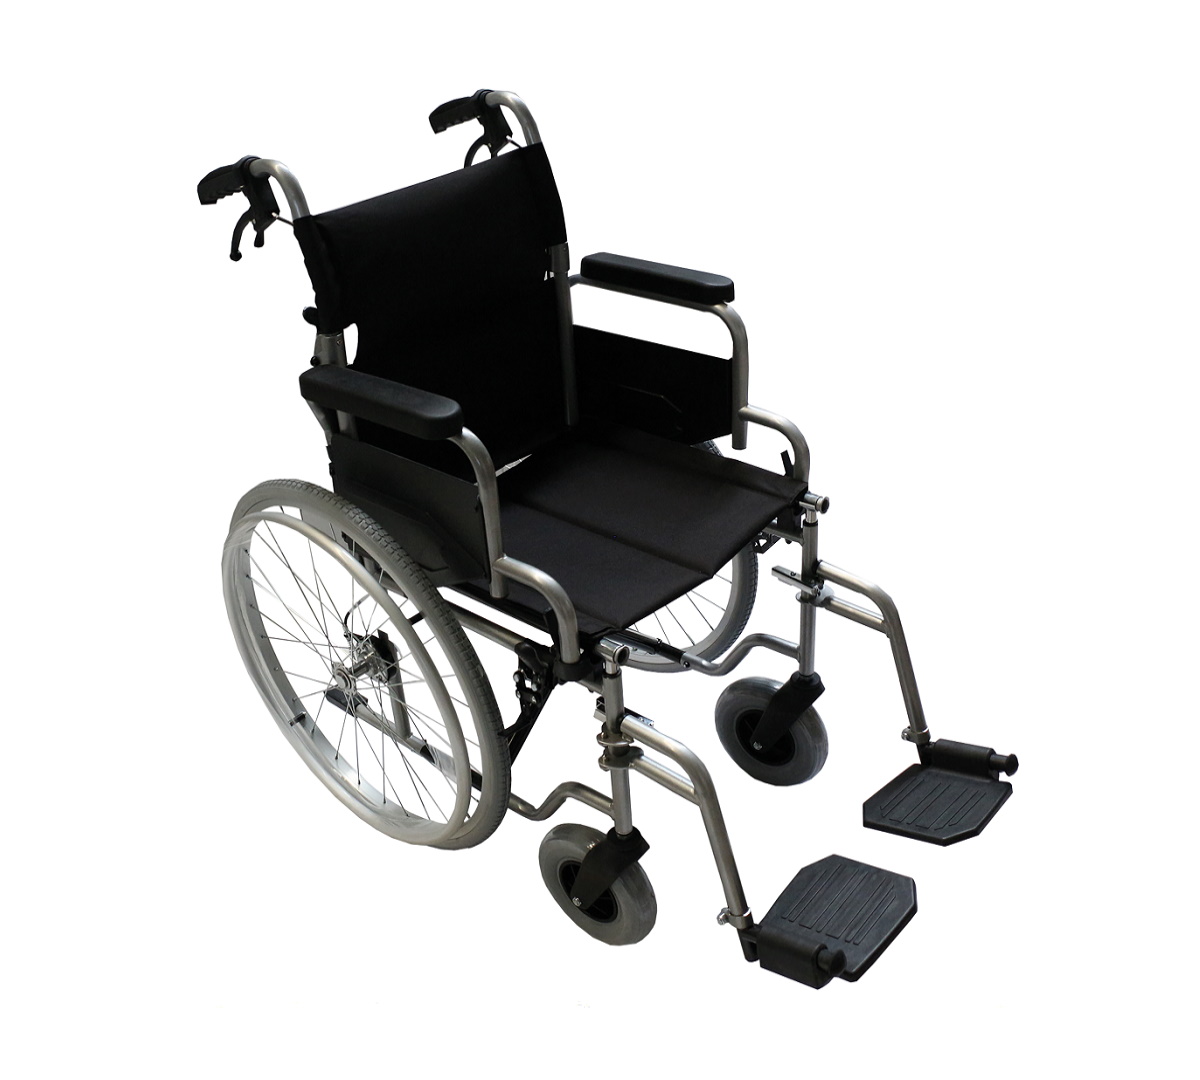 POYLİN | P120 (45 cm) Manuel Tekerlekli Sandalye | Akülü Tekerlekli Sandalye | Tekerlekli Sandalye